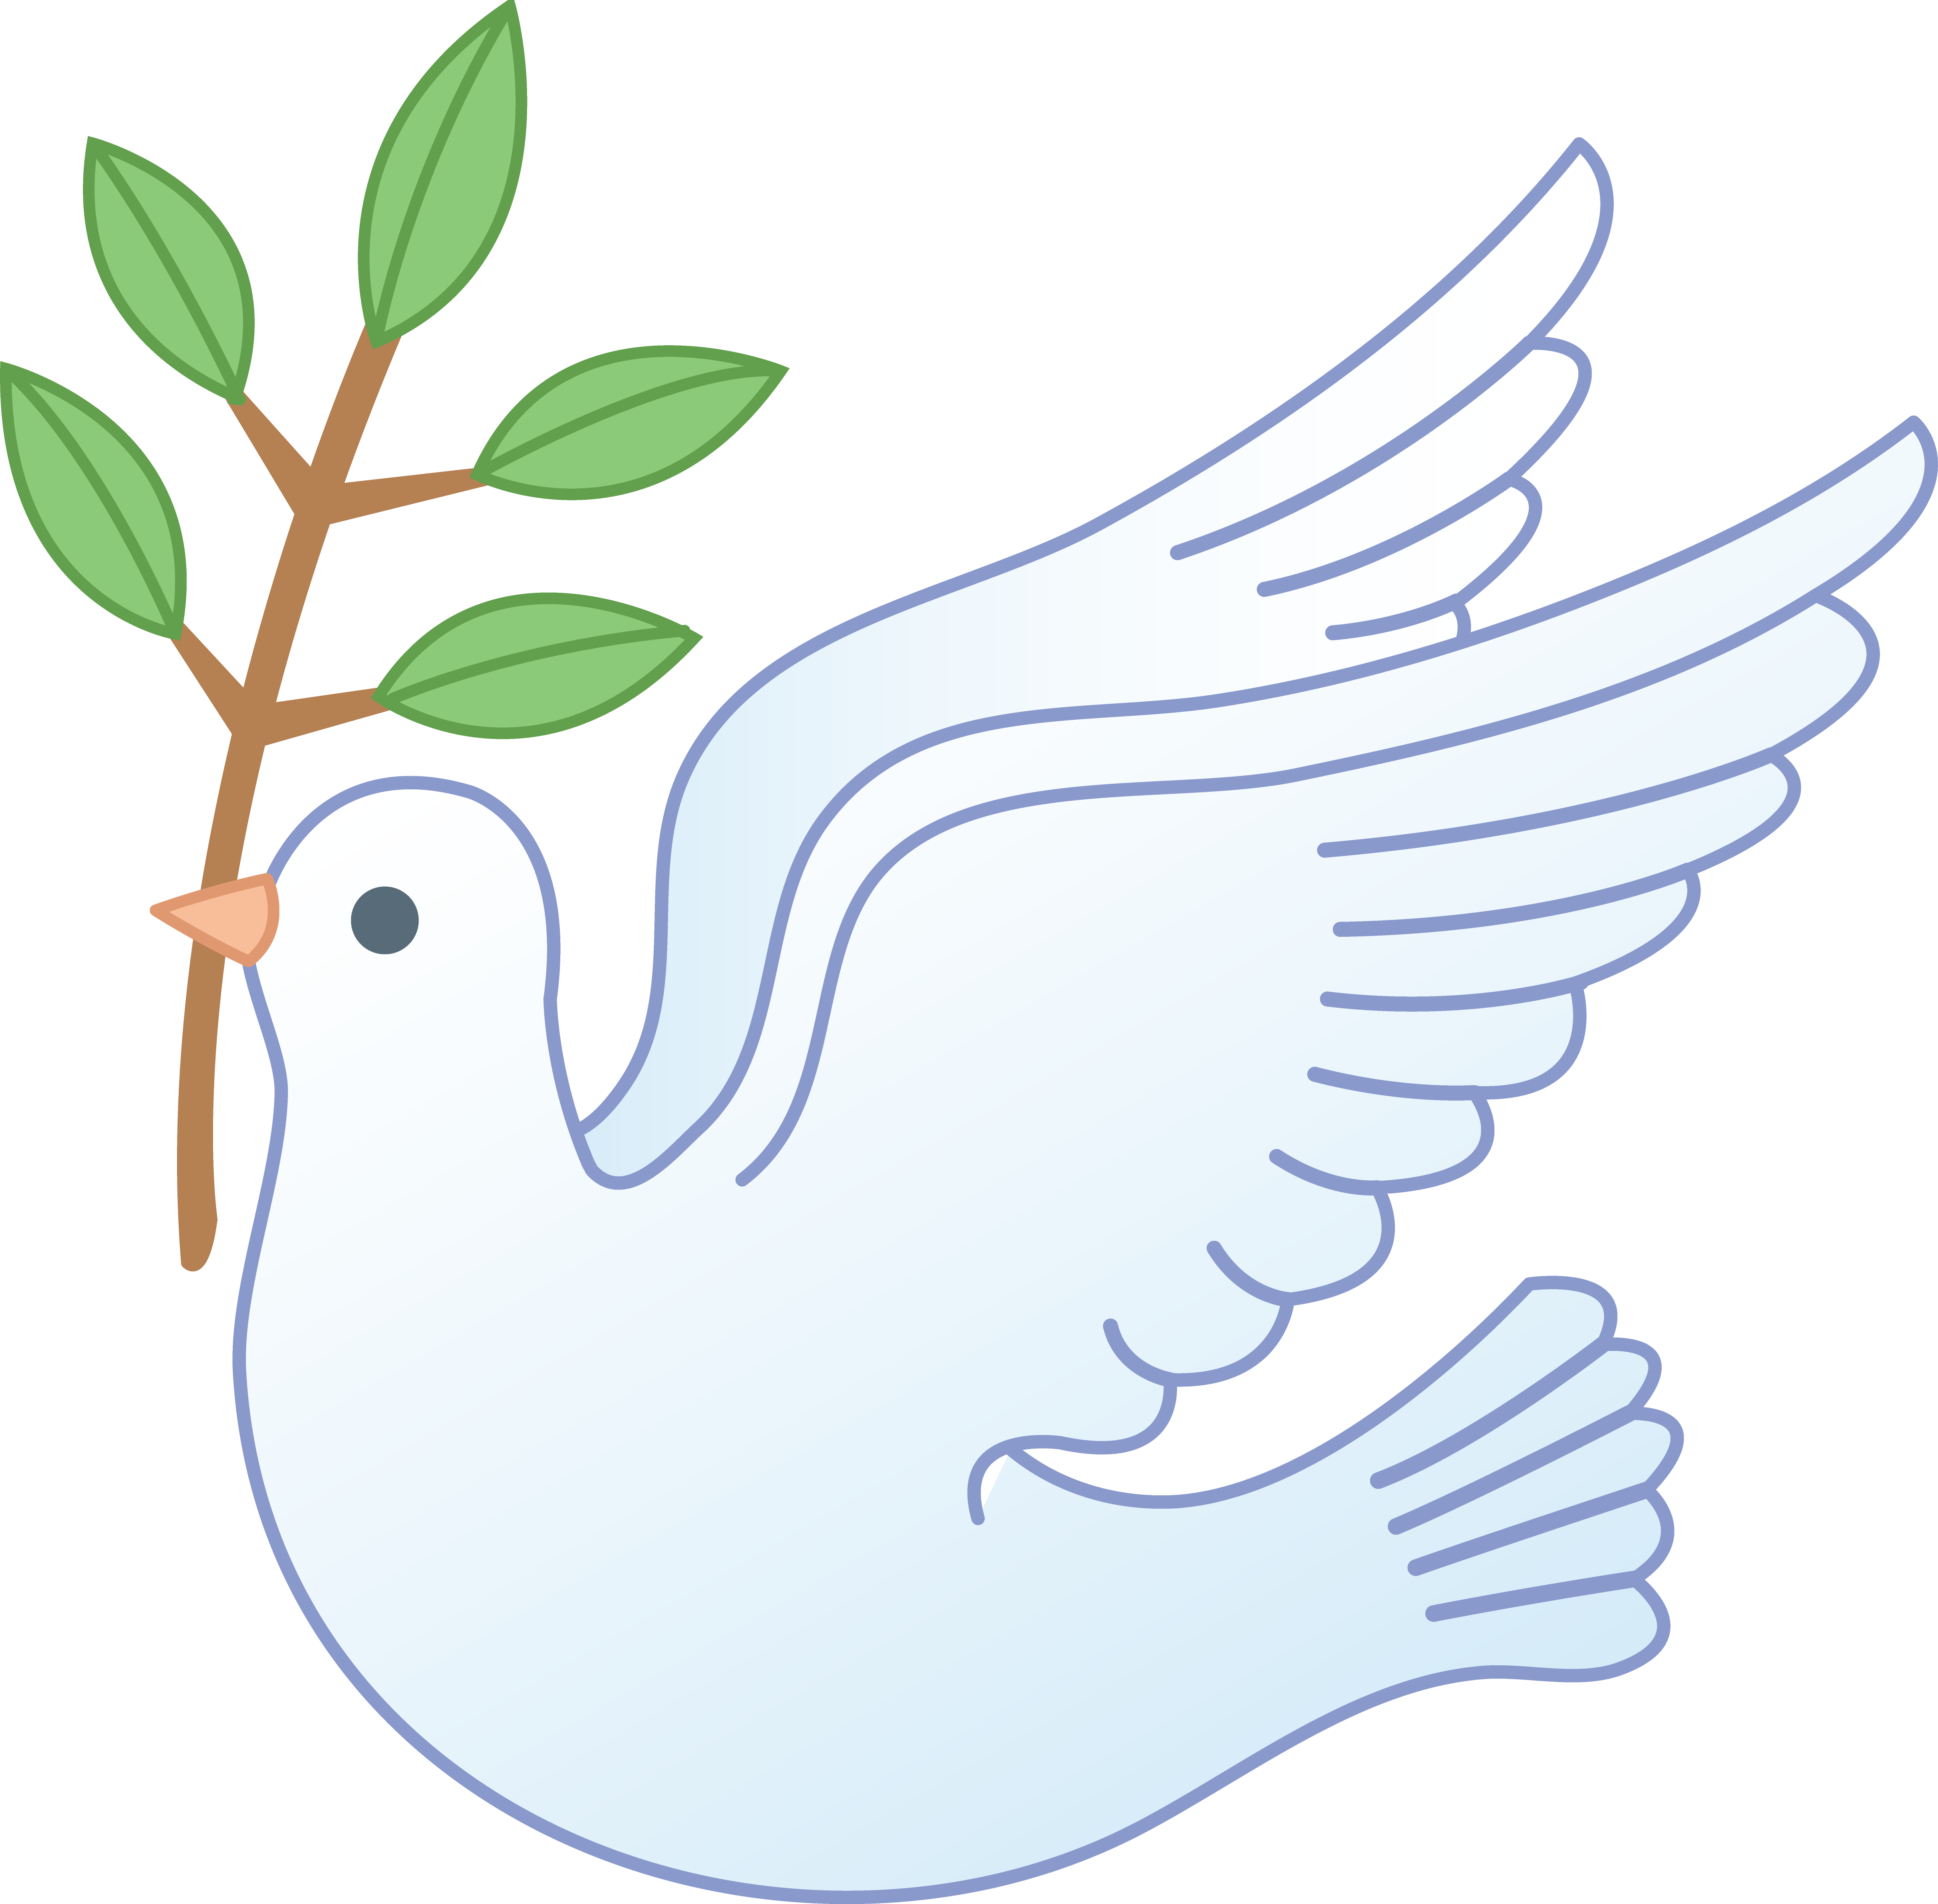 Peace Bird